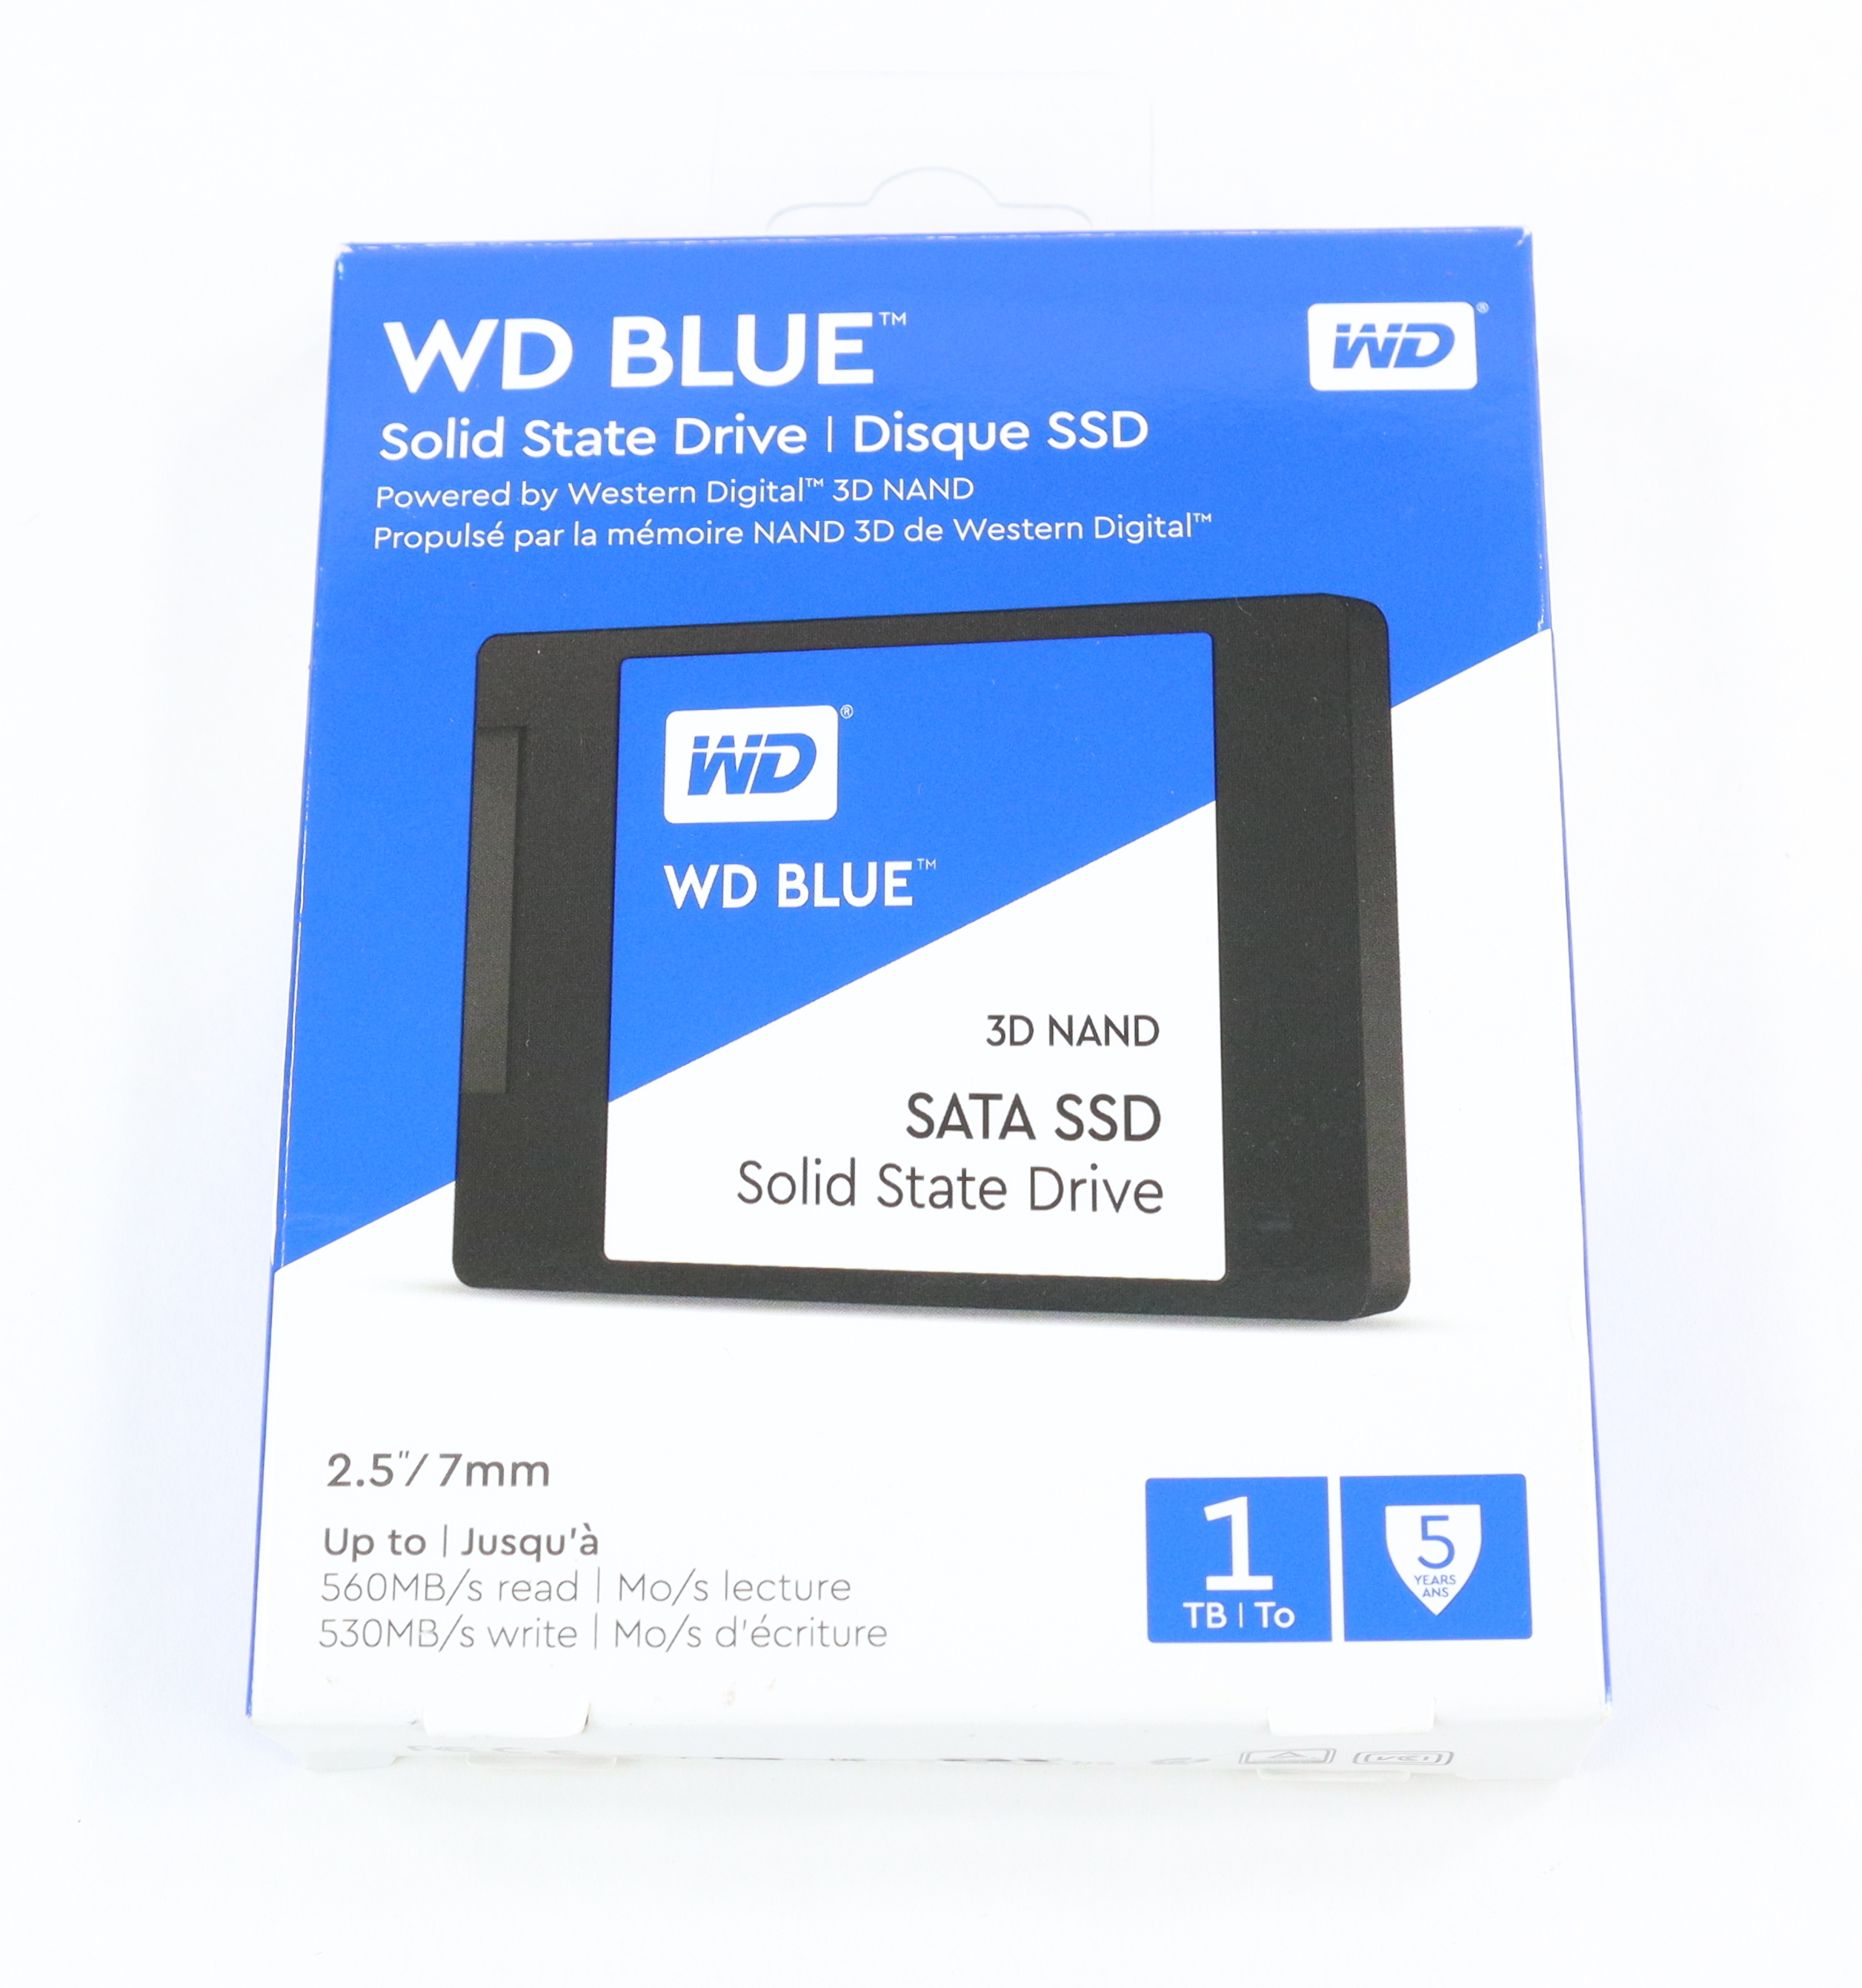 Disque SSD SATA WD Blue 3D NAND WDS100T2B0B - SSD - 1 To - SATA 6Gb/s